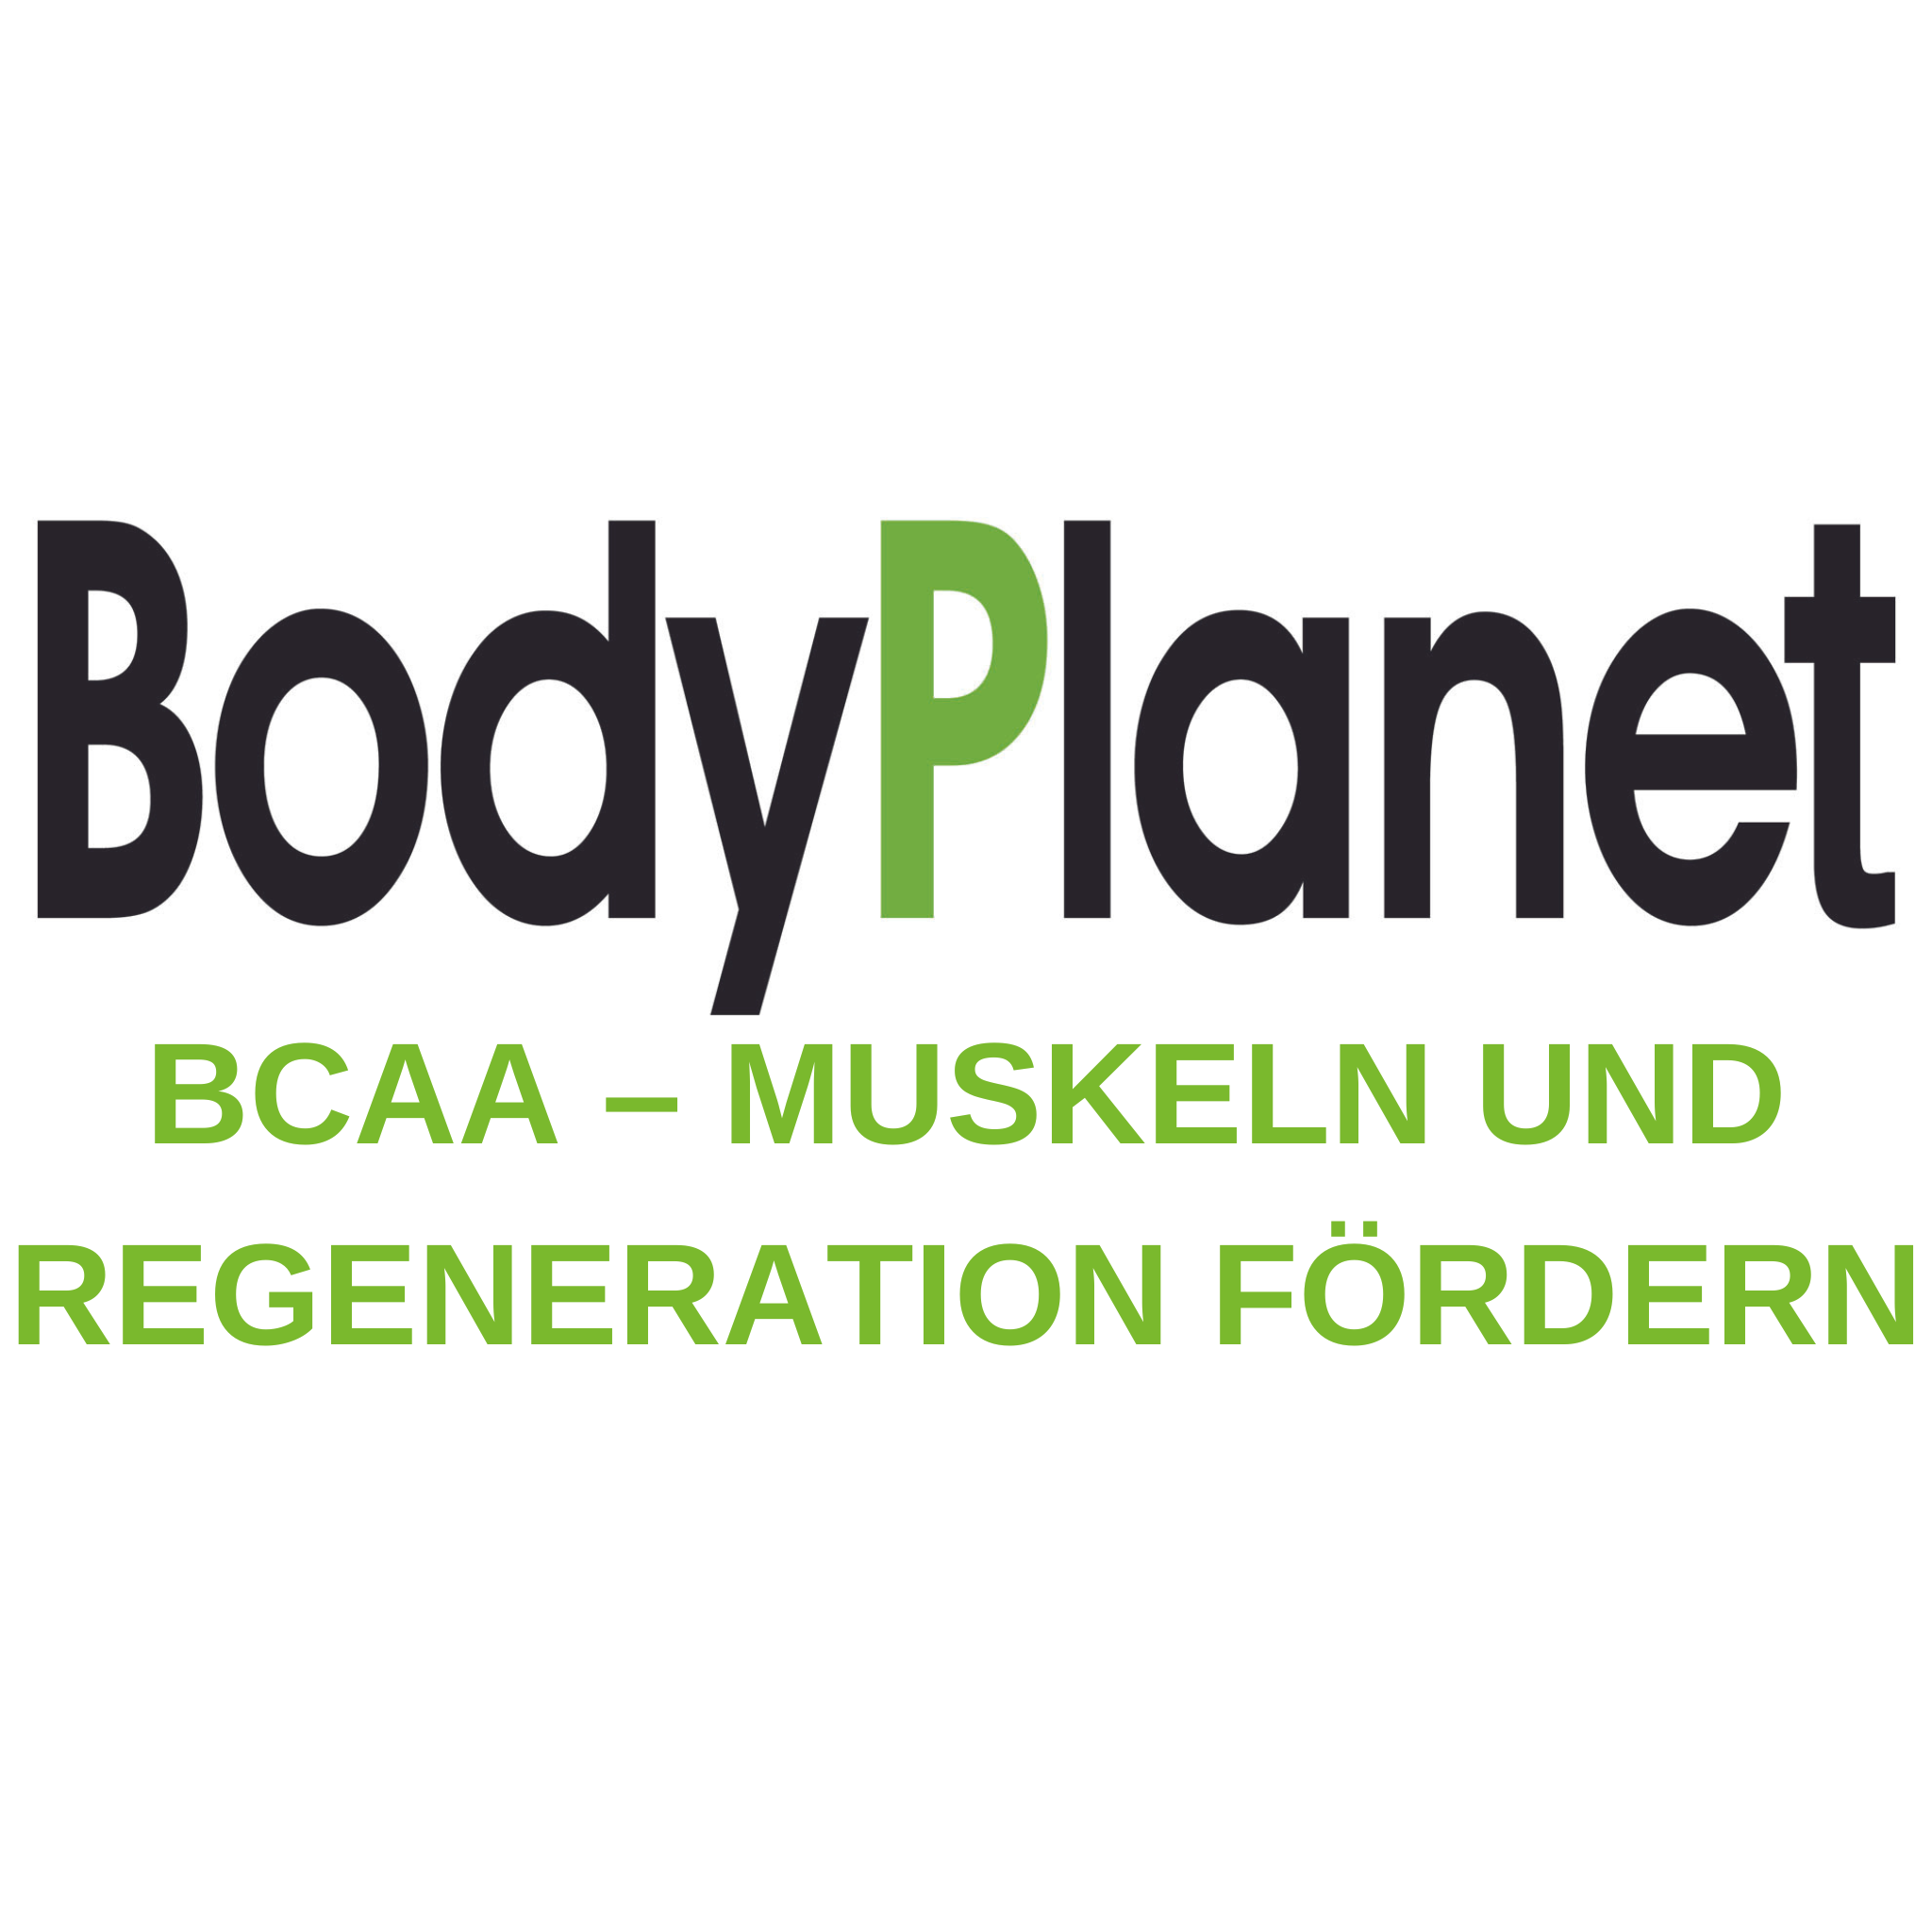 BCAA – Muskeln und Regeneration fördern